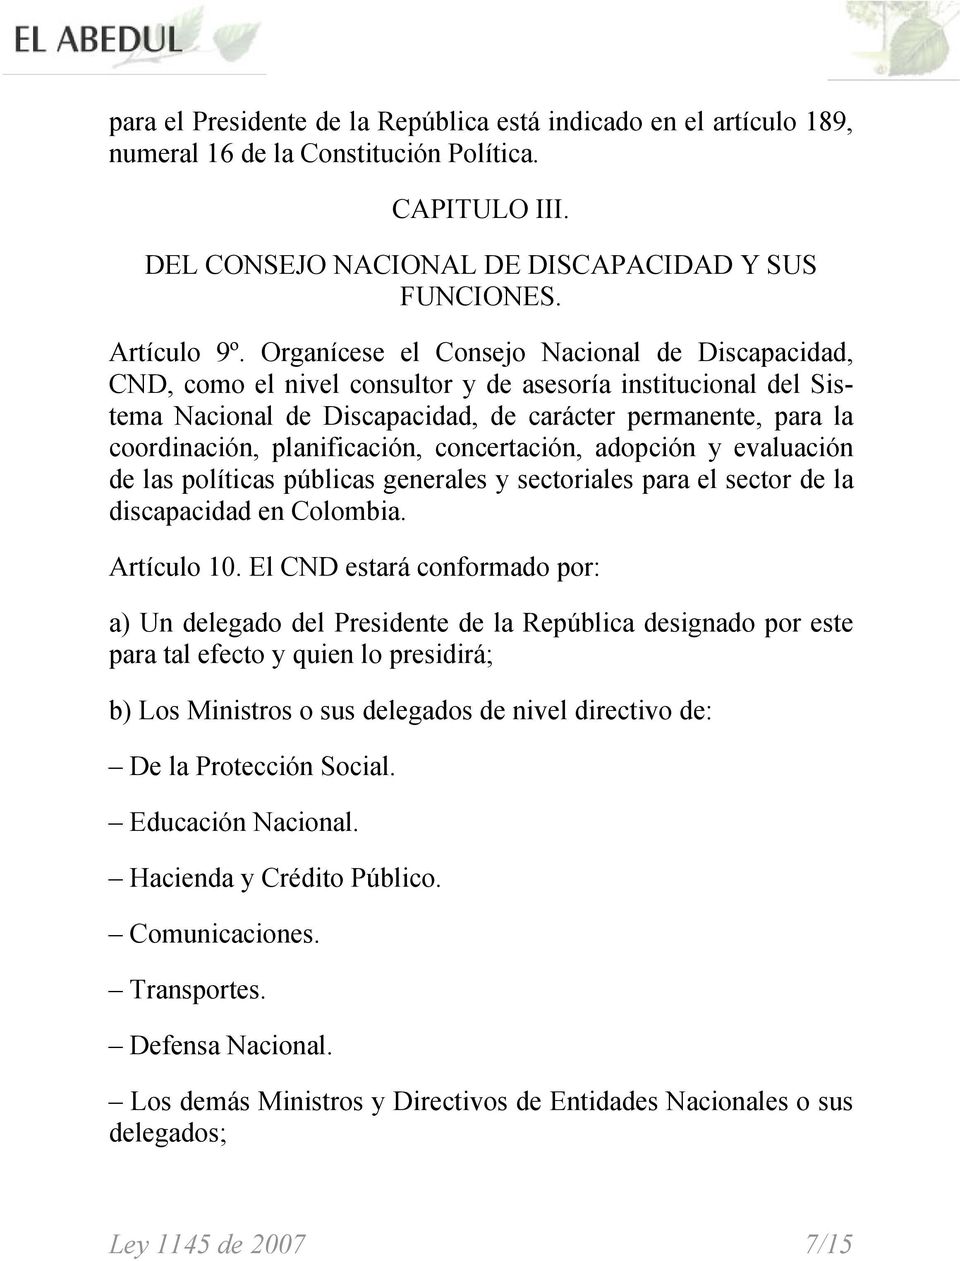 planificación, concertación, adopción y evaluación de las políticas públicas generales y sectoriales para el sector de la discapacidad en Colombia. Artículo 10.